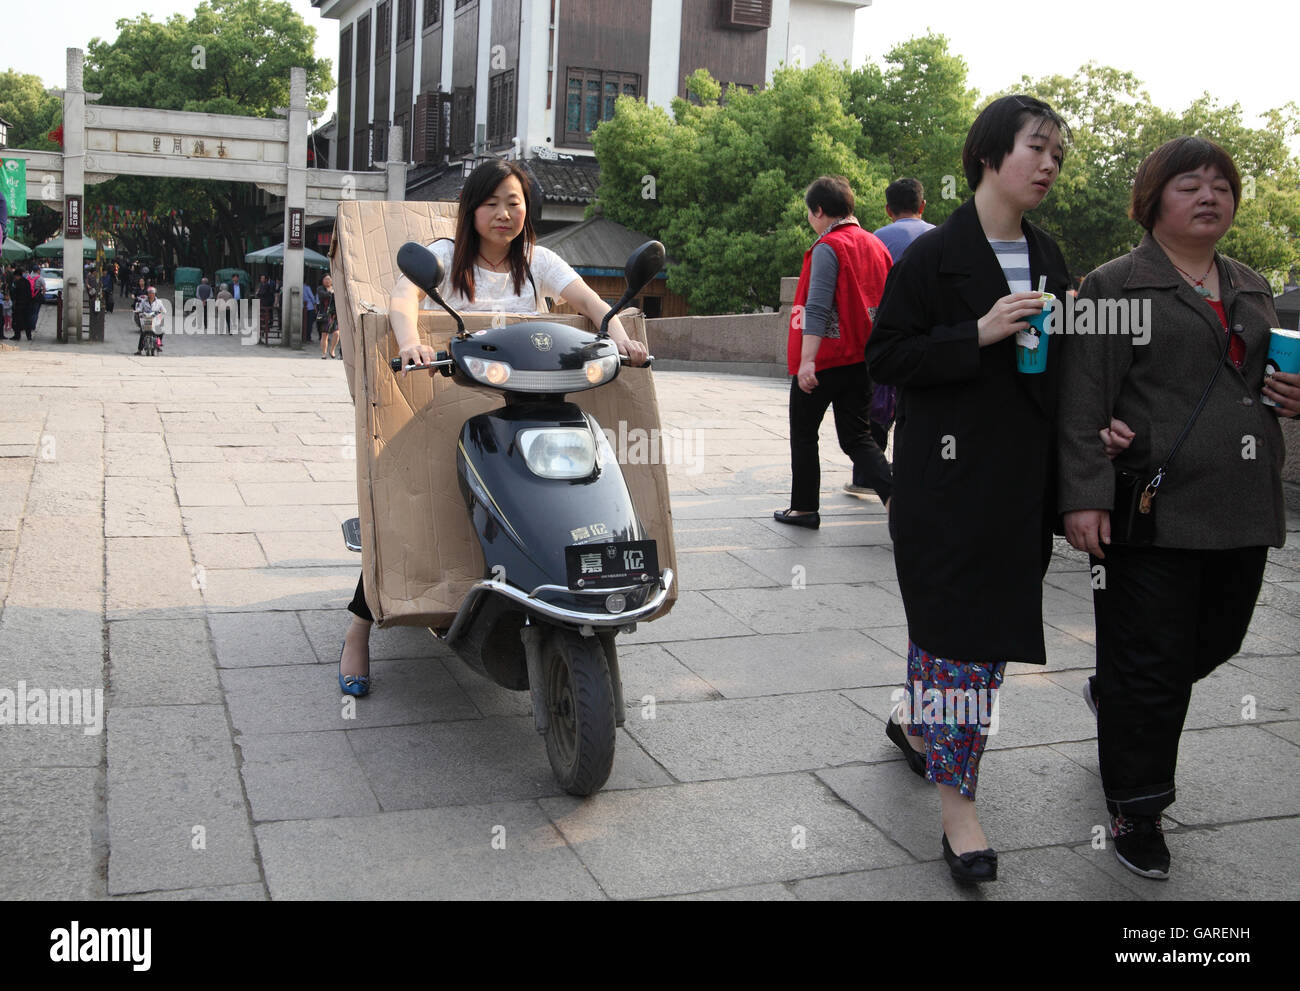 Una mujer china paseos un scooter de transportar enormes paquetes que lleva en frente de ella y en la espalda, otras personas caminando alrededor. Tongli, China. Foto de stock